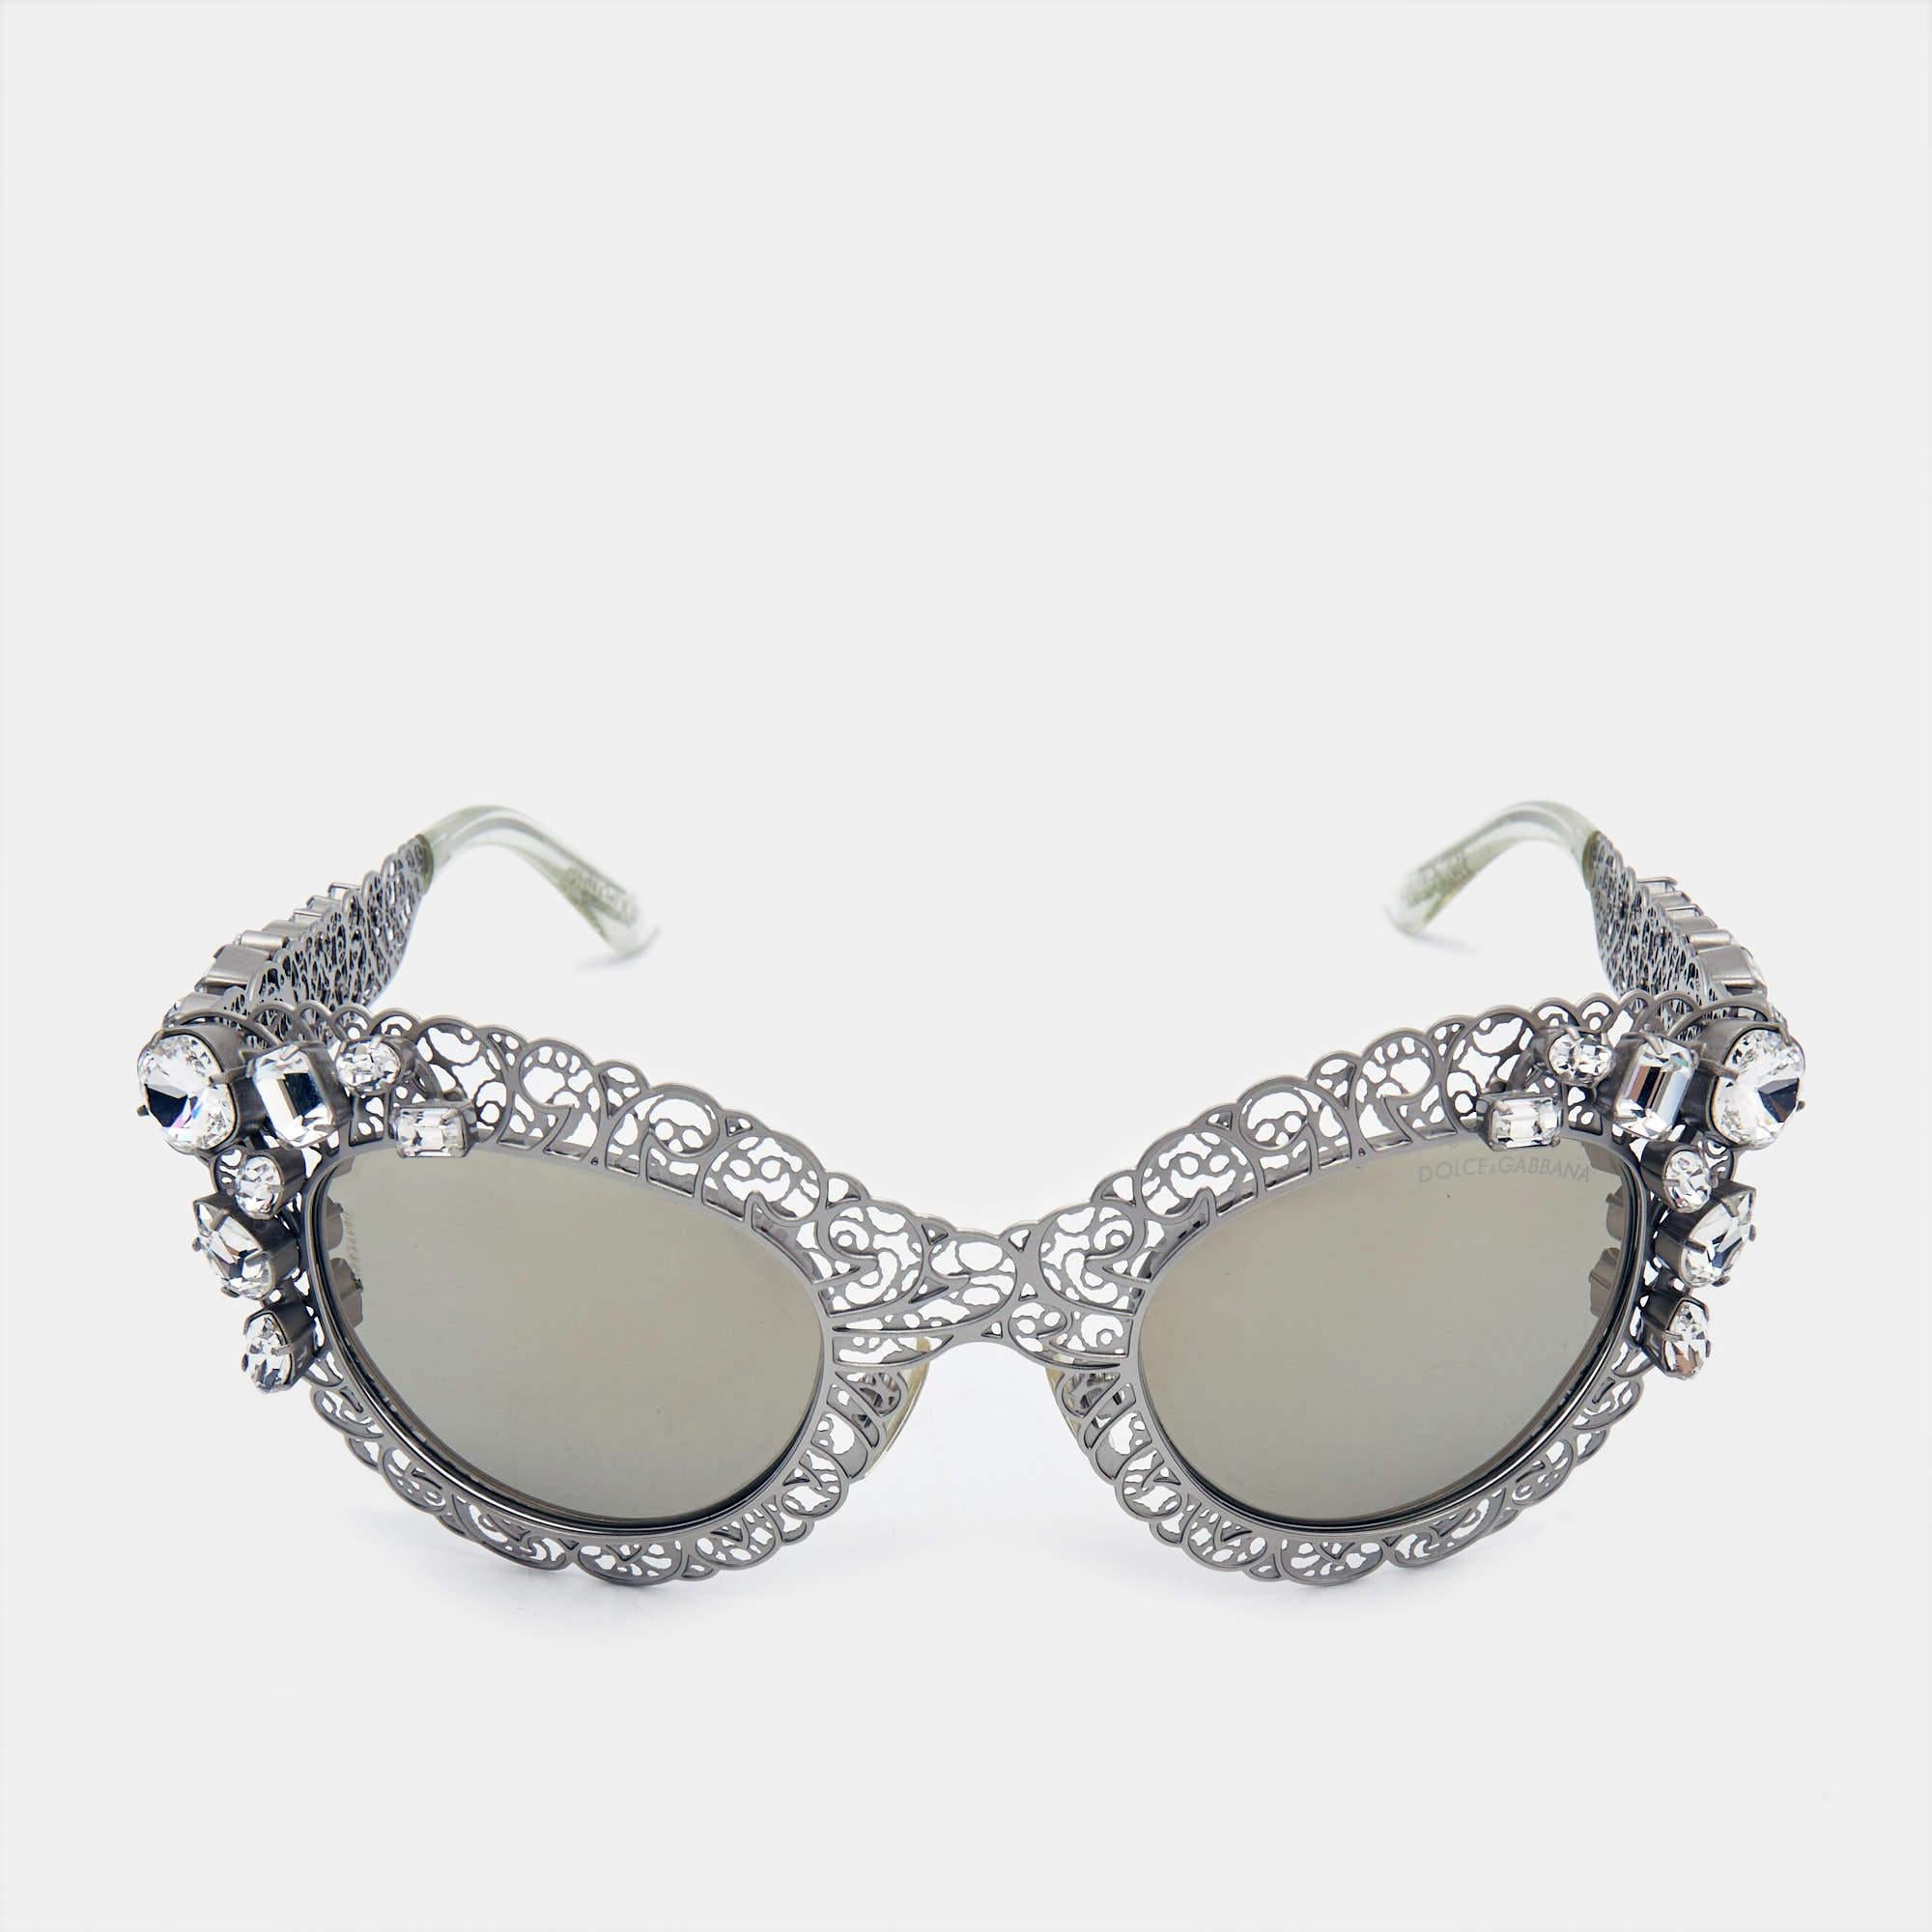 Diese feminine Cat-Eye-Sonnenbrille von Dolce & Gabbana wurde aus Acetat gefertigt. Sie ist mit filigranen Details versehen und mit auffälligen Verzierungen geschmückt, die ihr einen edlen Look verleihen.

Enthält
Original Etui, Original Etui,